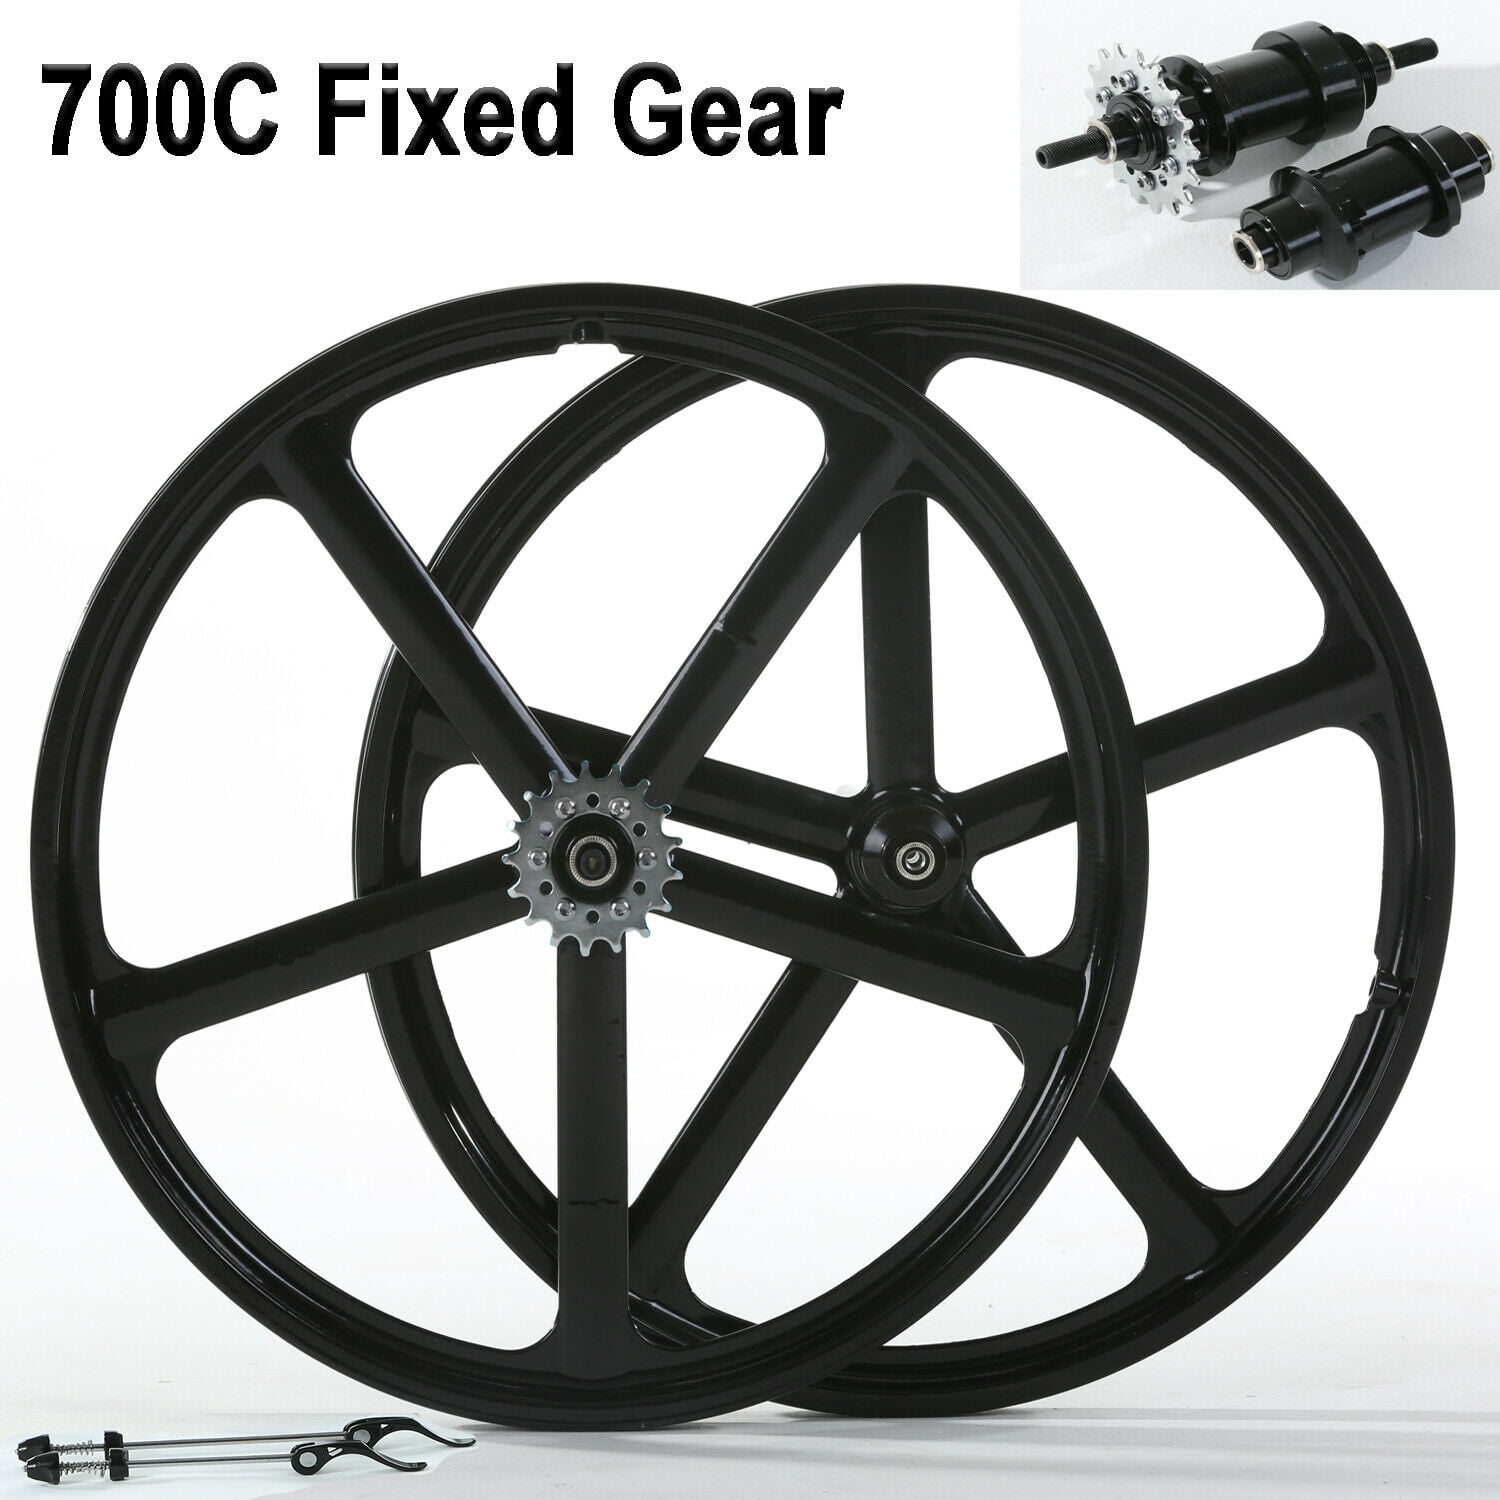 700c 5 Spoke Fixed Gear Single Speed Bike Fixie Five Spoke Mag Wheel Rim Front 